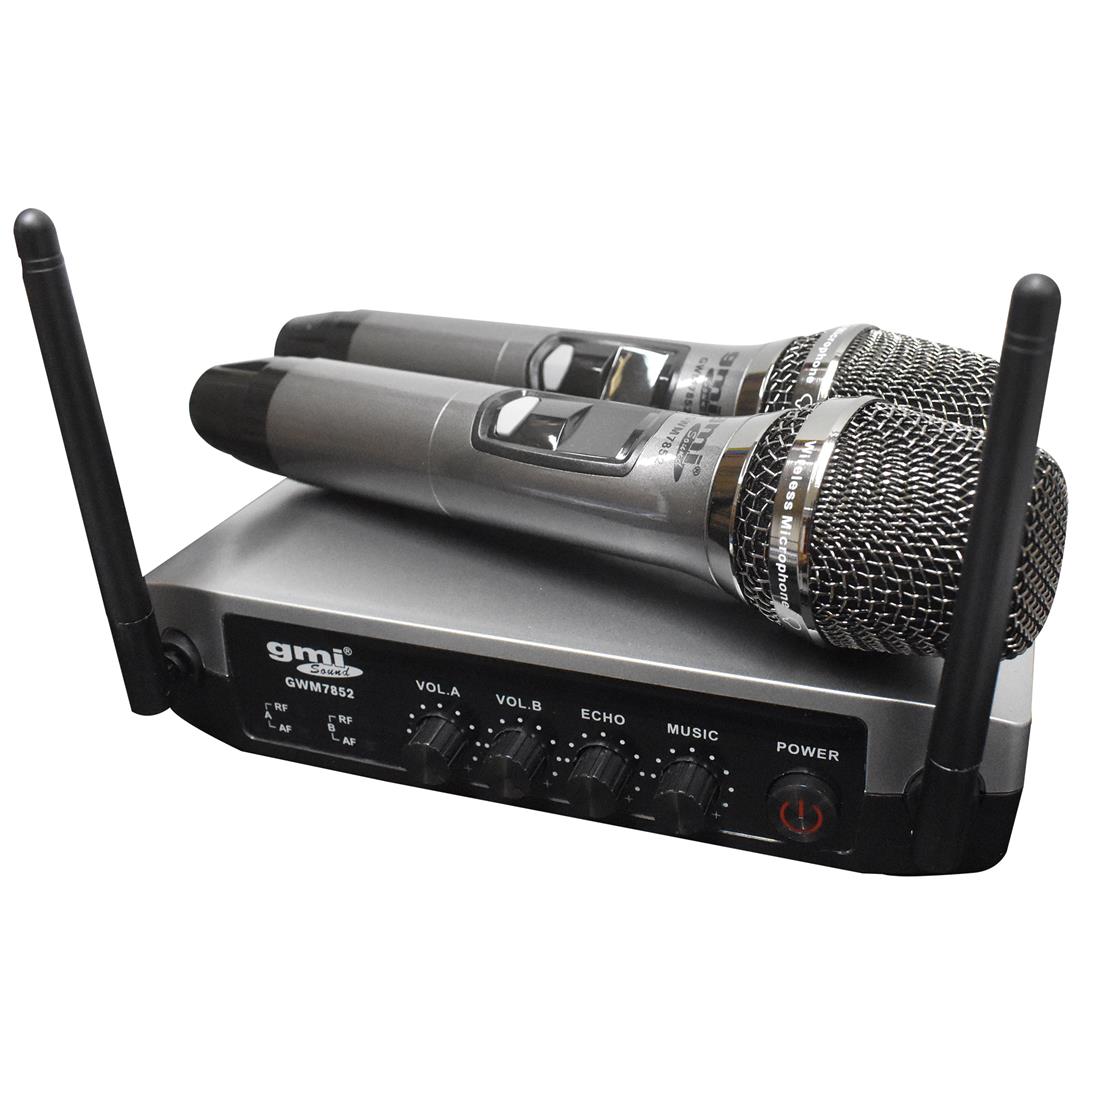 Micrófono inalámbrico profesional Hi-Fi bidireccional – KAISER